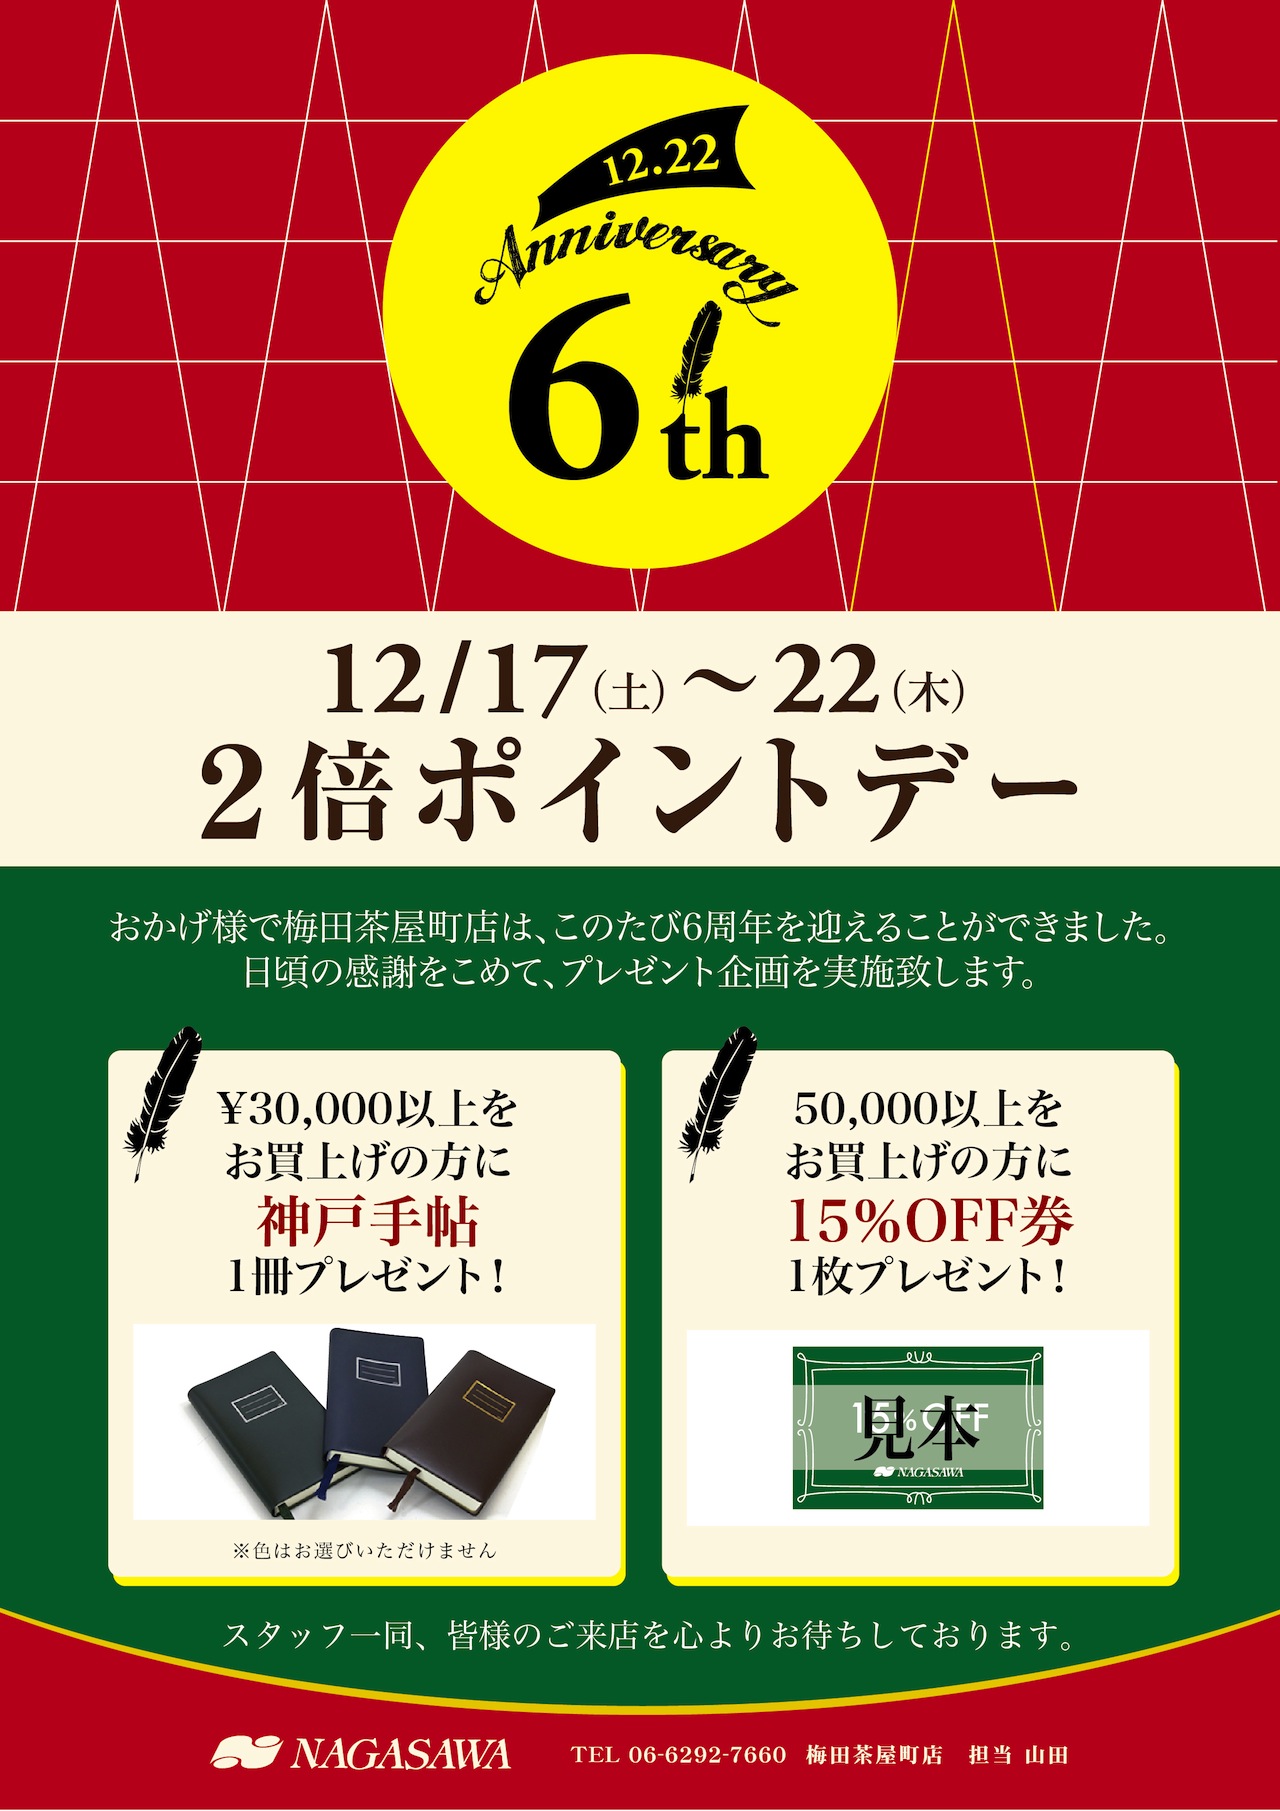 NAGASAWA梅田茶屋町店6周年